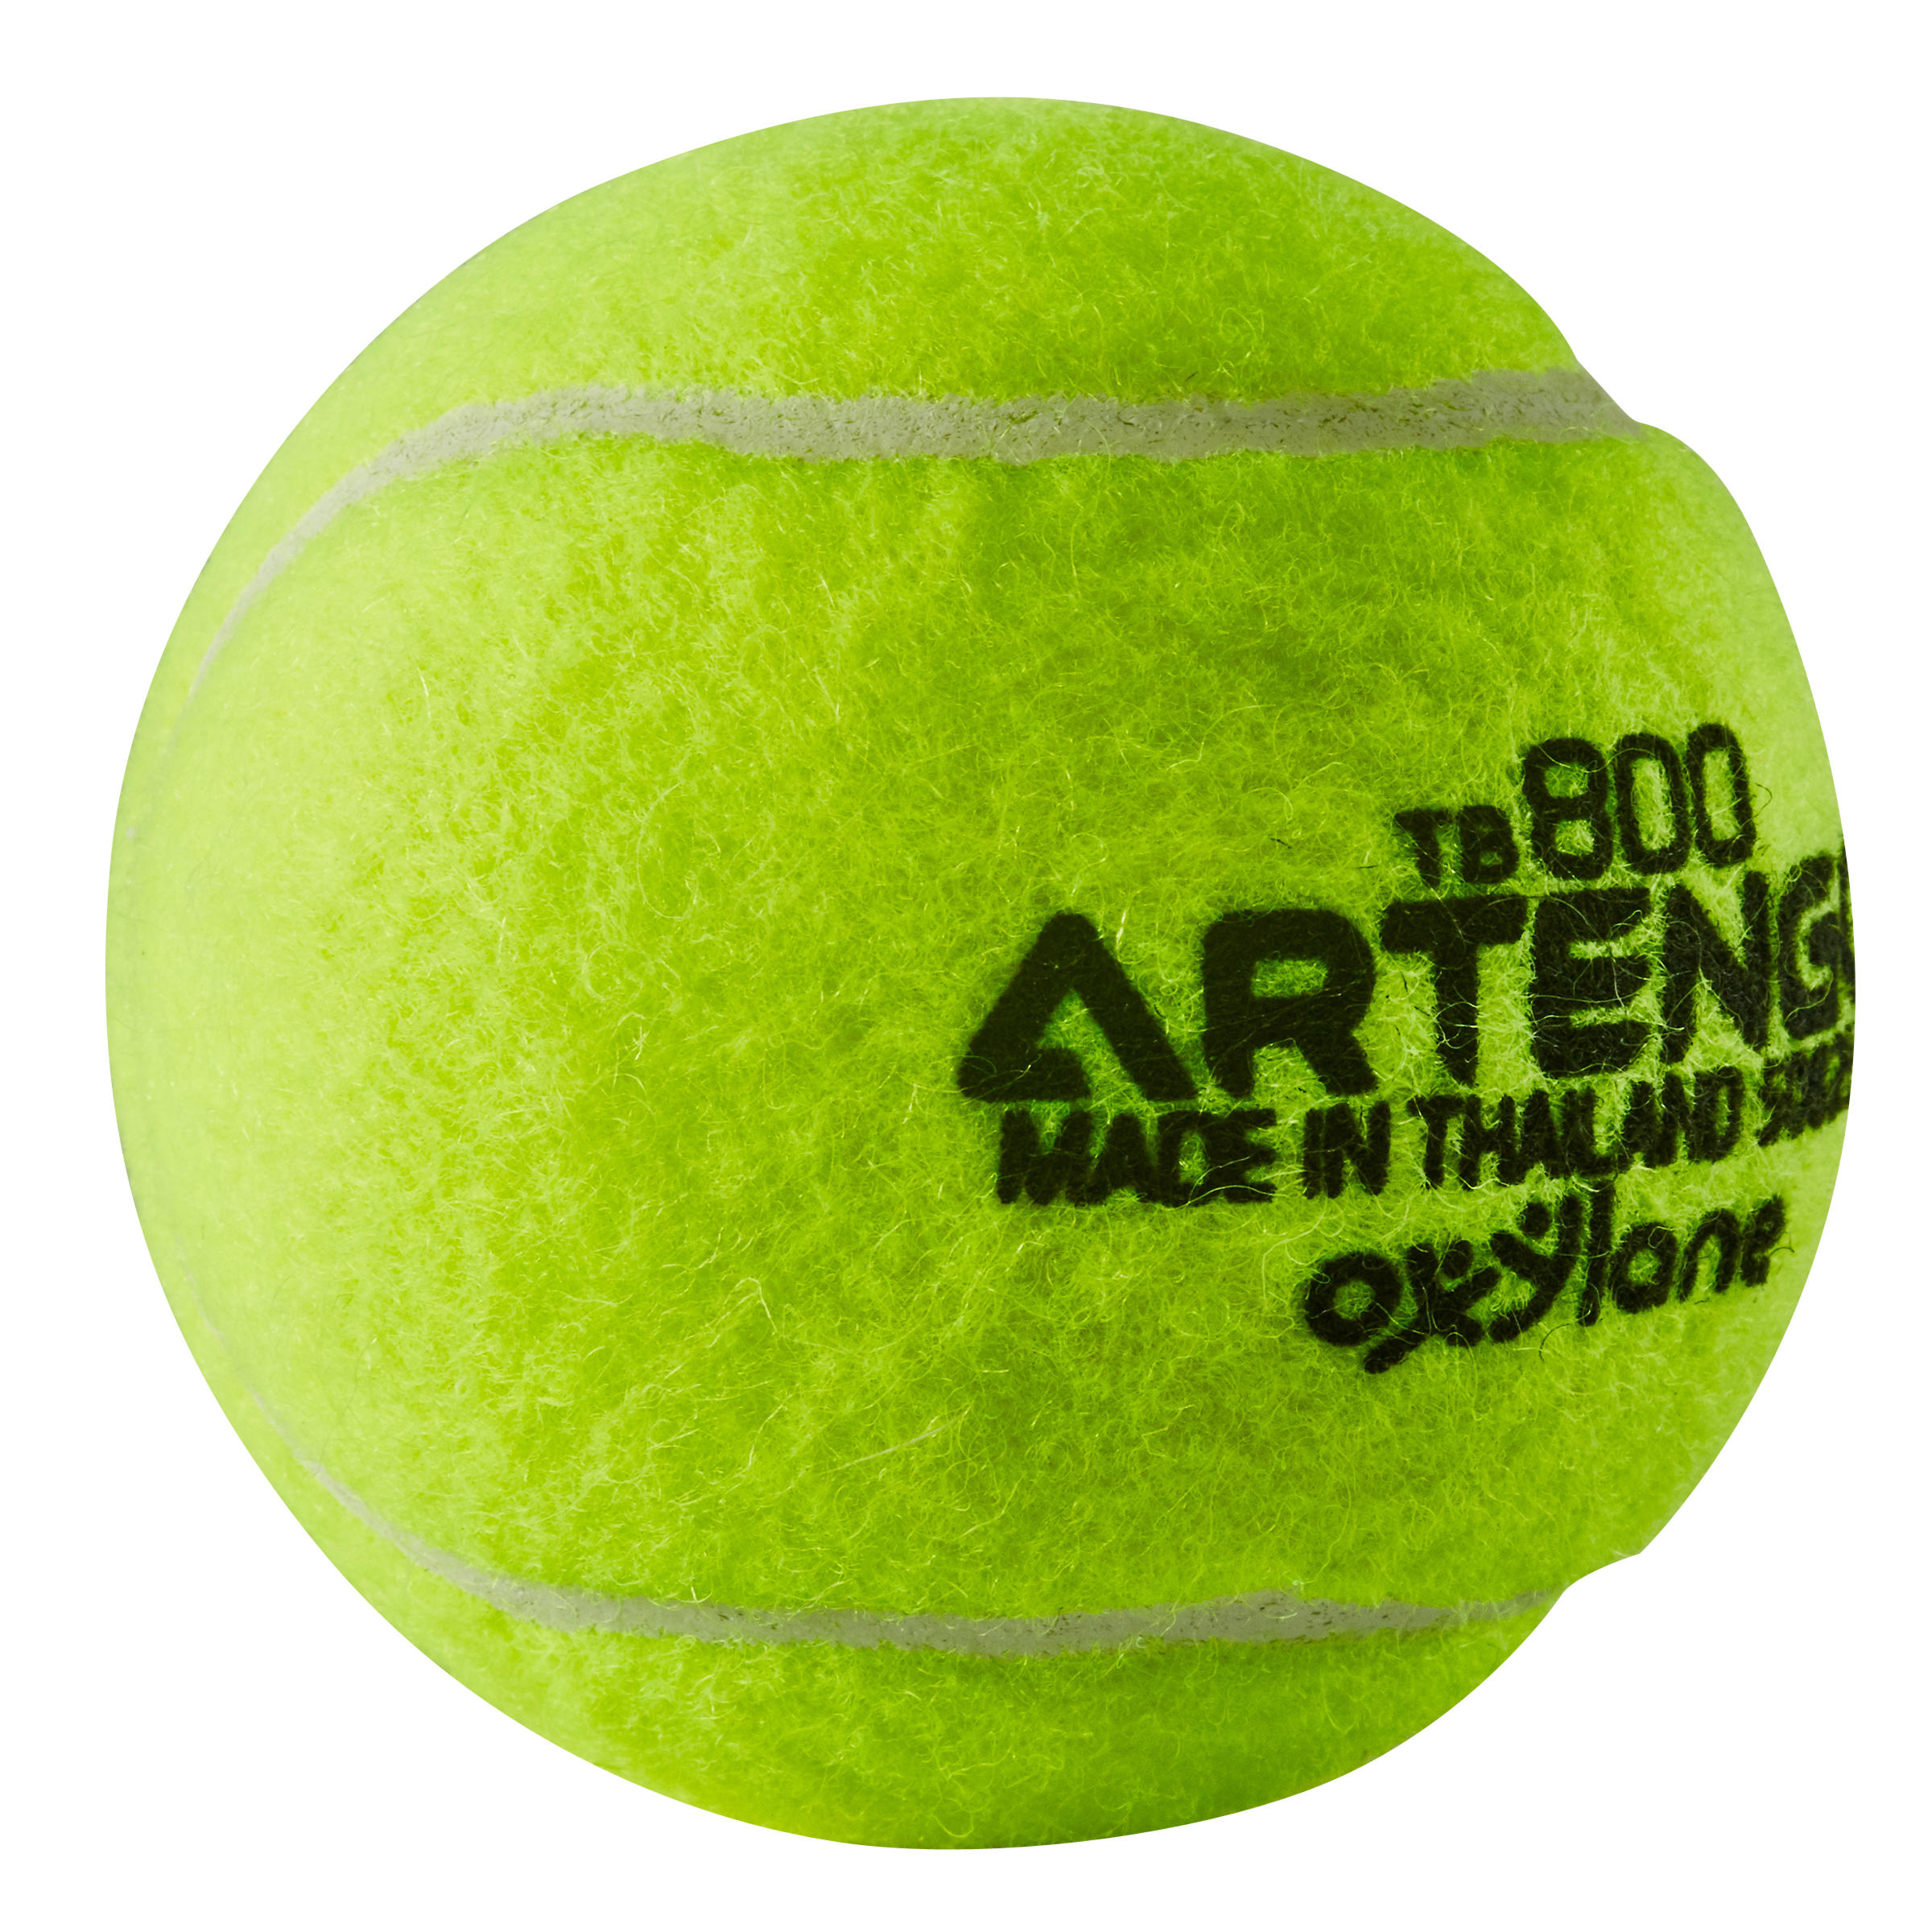 Tennis Beginner Ball - TB800 Yellow